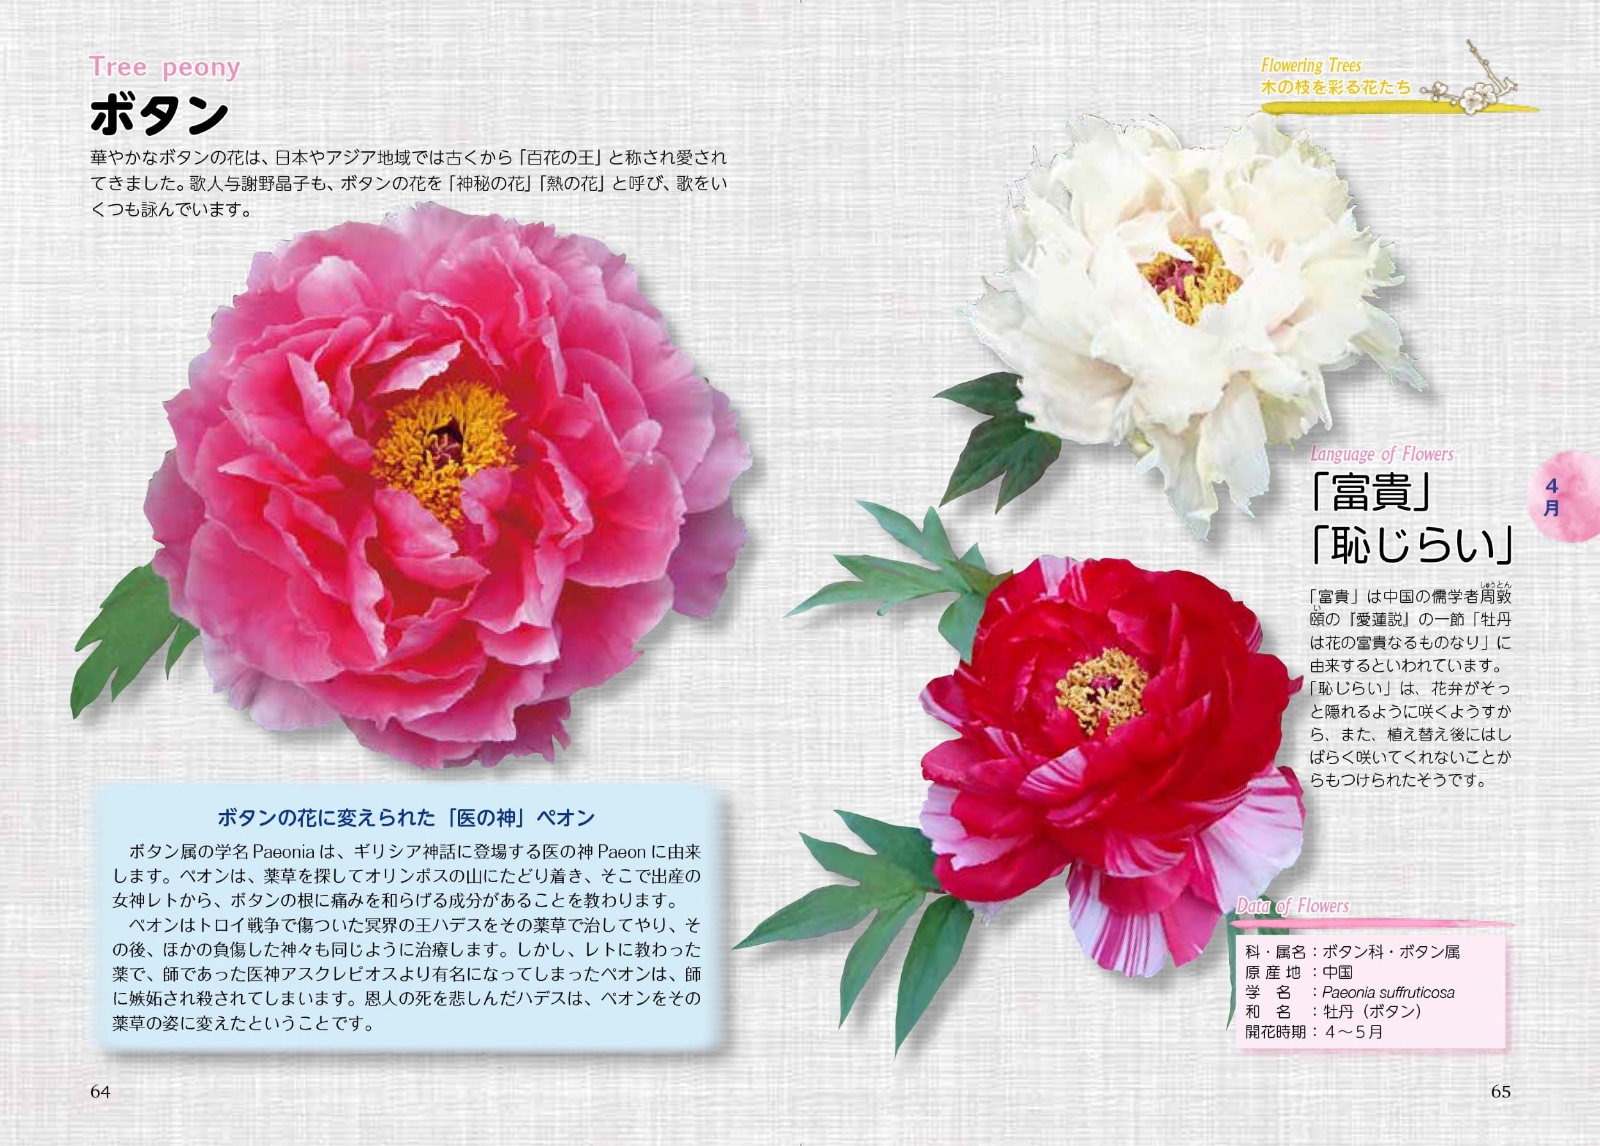 楽天ブックス 幸せを運ぶ花言葉12か月 366日の誕生花からの占いメッセージ入り Flower Me 本